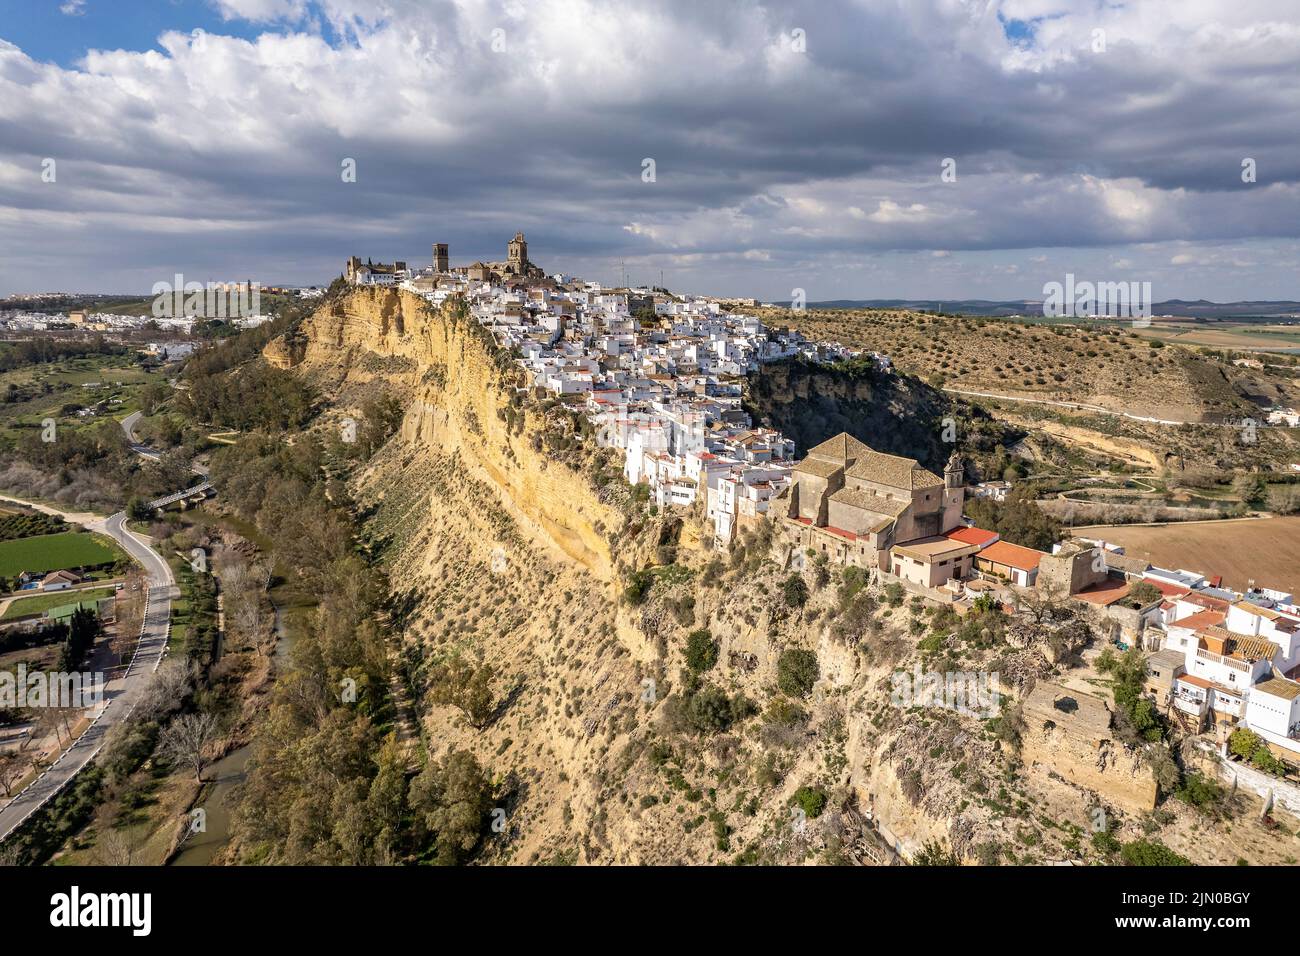 Die weissen Häuser von Arcos de la Frontera von oben gesehen, Andalusien, Espagnol | les maisons blanches d'Arcos de la Frontera vu d'en haut, Andalu Banque D'Images